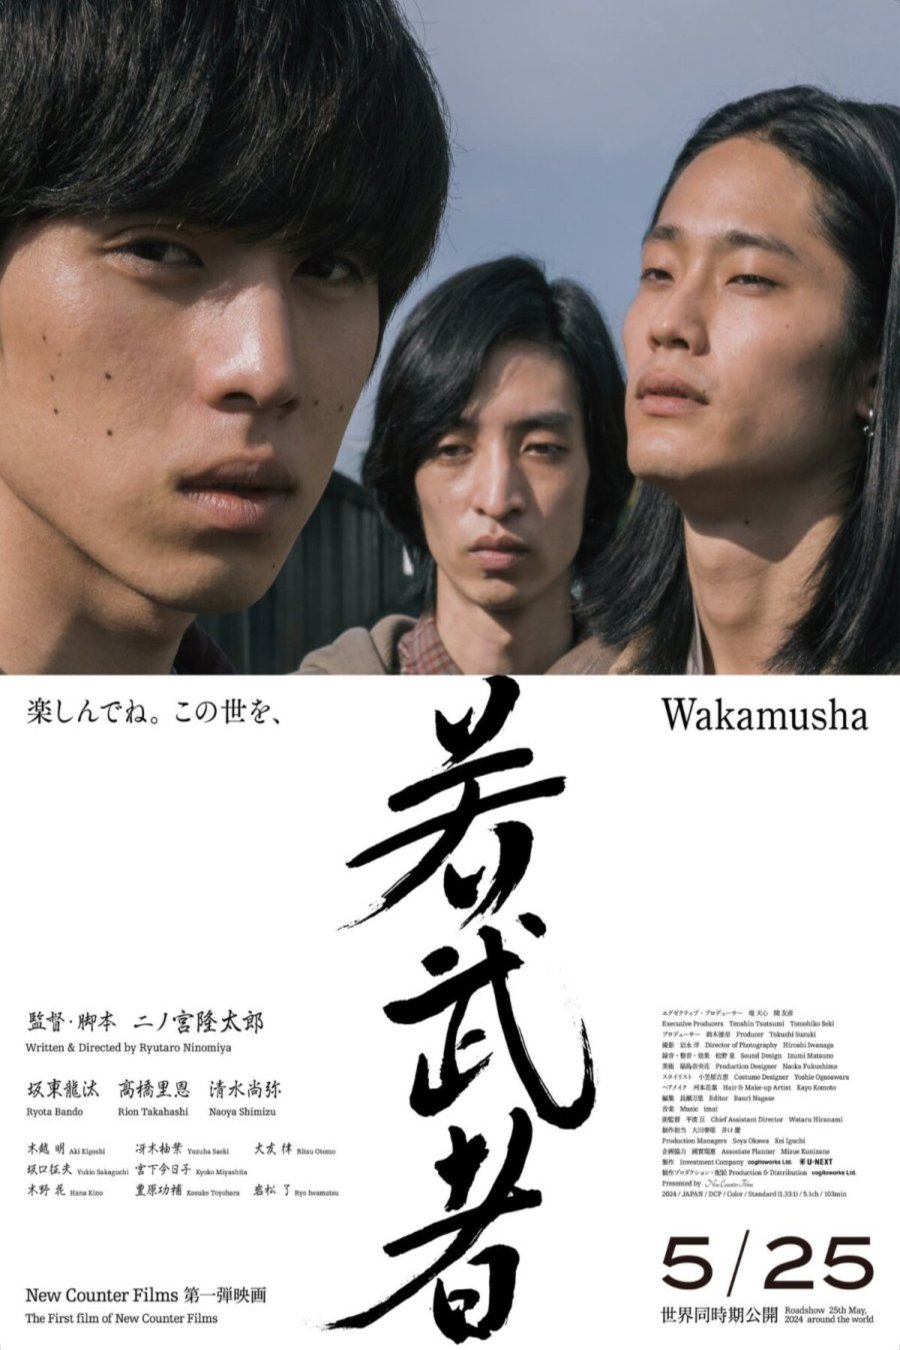 Japanese poster of the movie Wakamusha